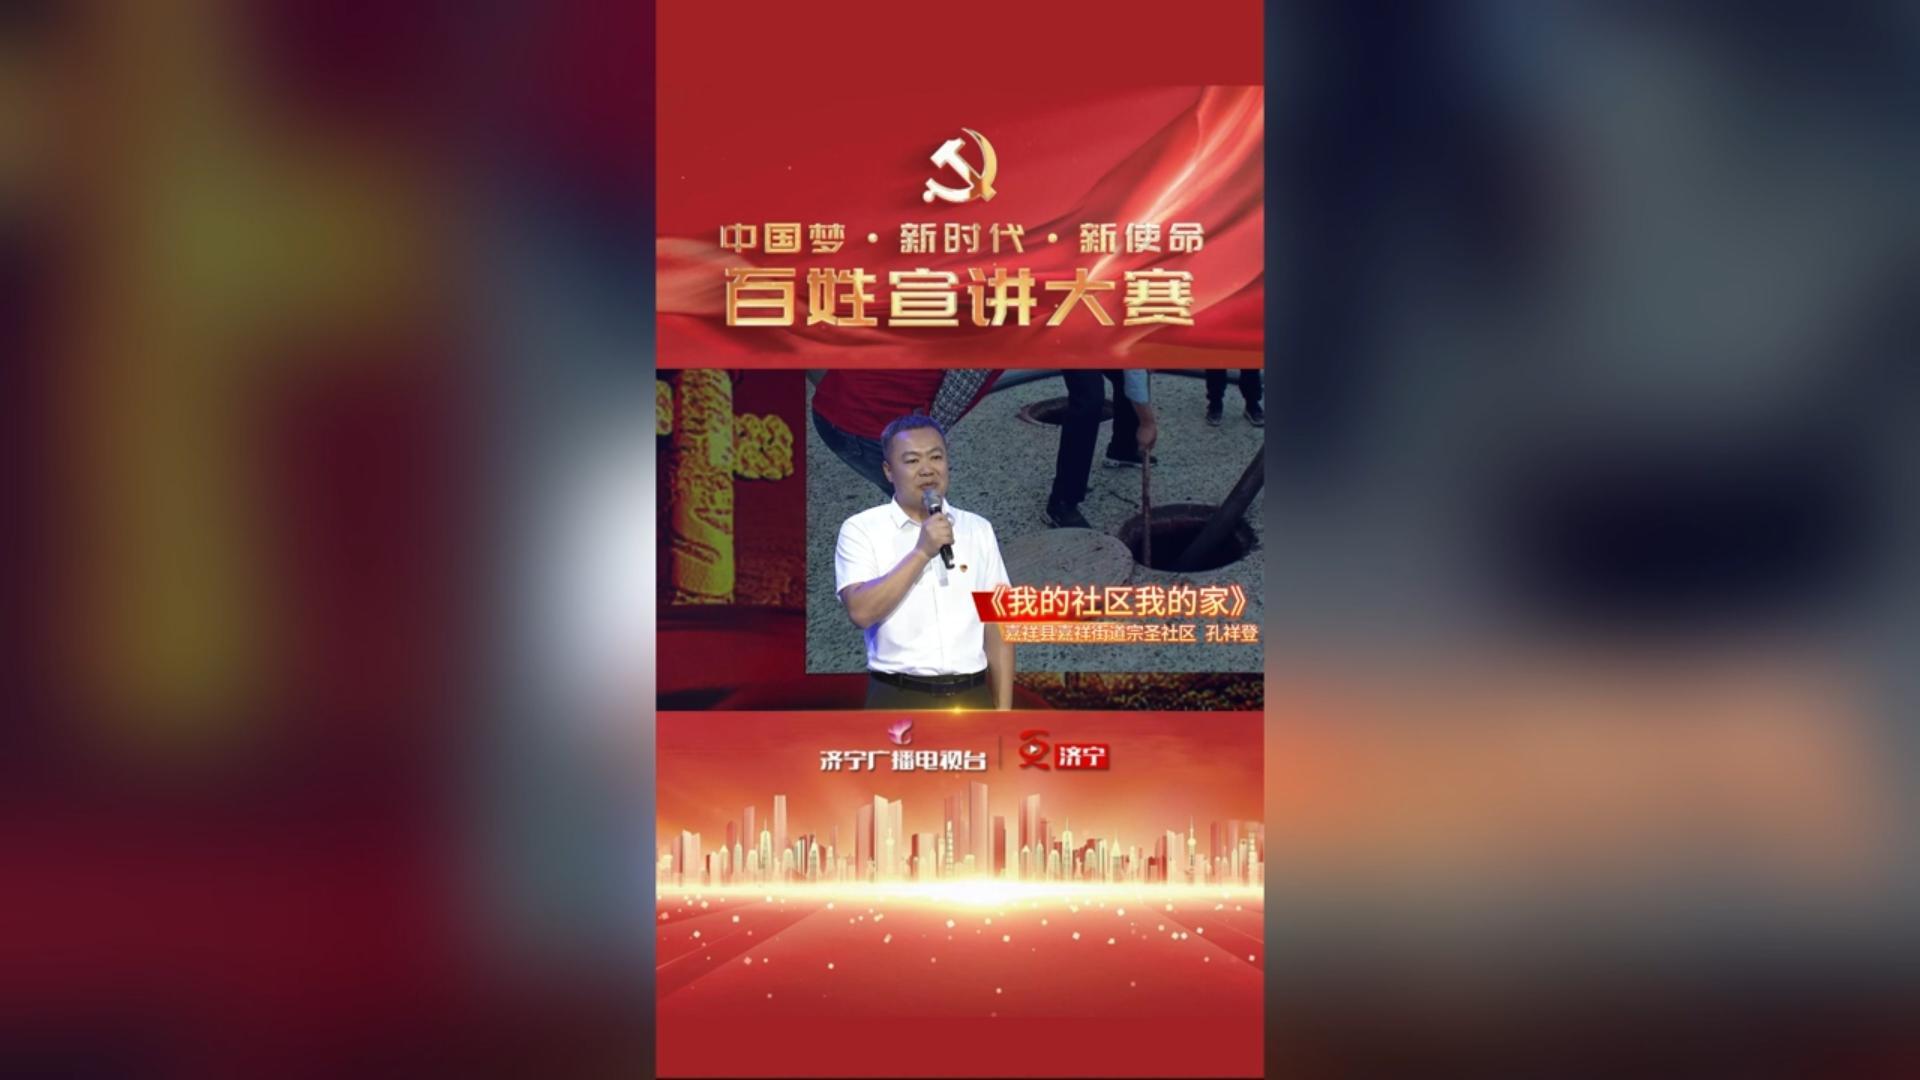 更济宁 | “中国梦·新时代·新使命”百姓宣讲——孔祥登 《我的社区我的家》